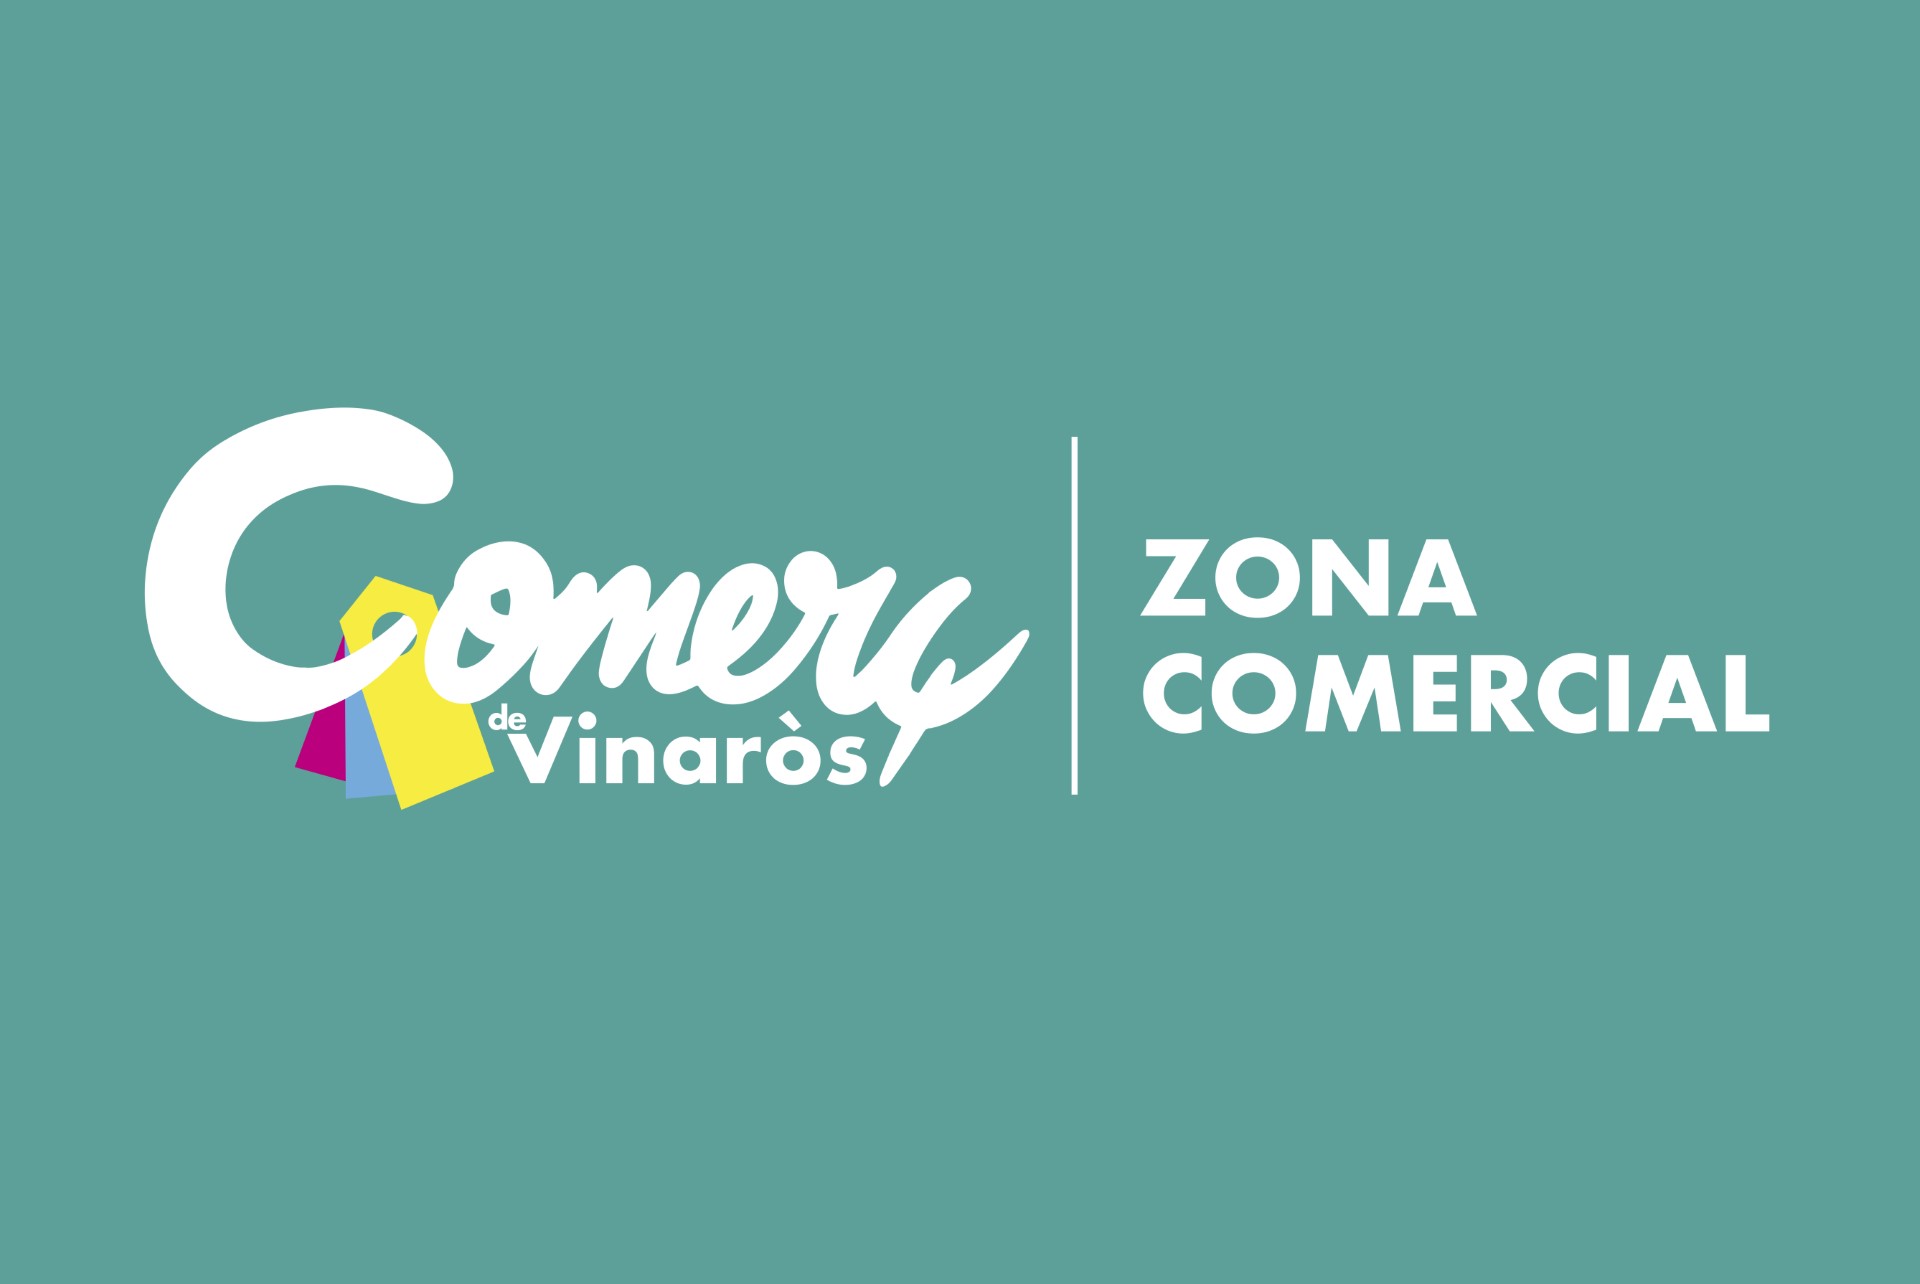 L’Ajuntament de Vinaròs presenta una nova marca del comerç i la incorporarà a la senyalització